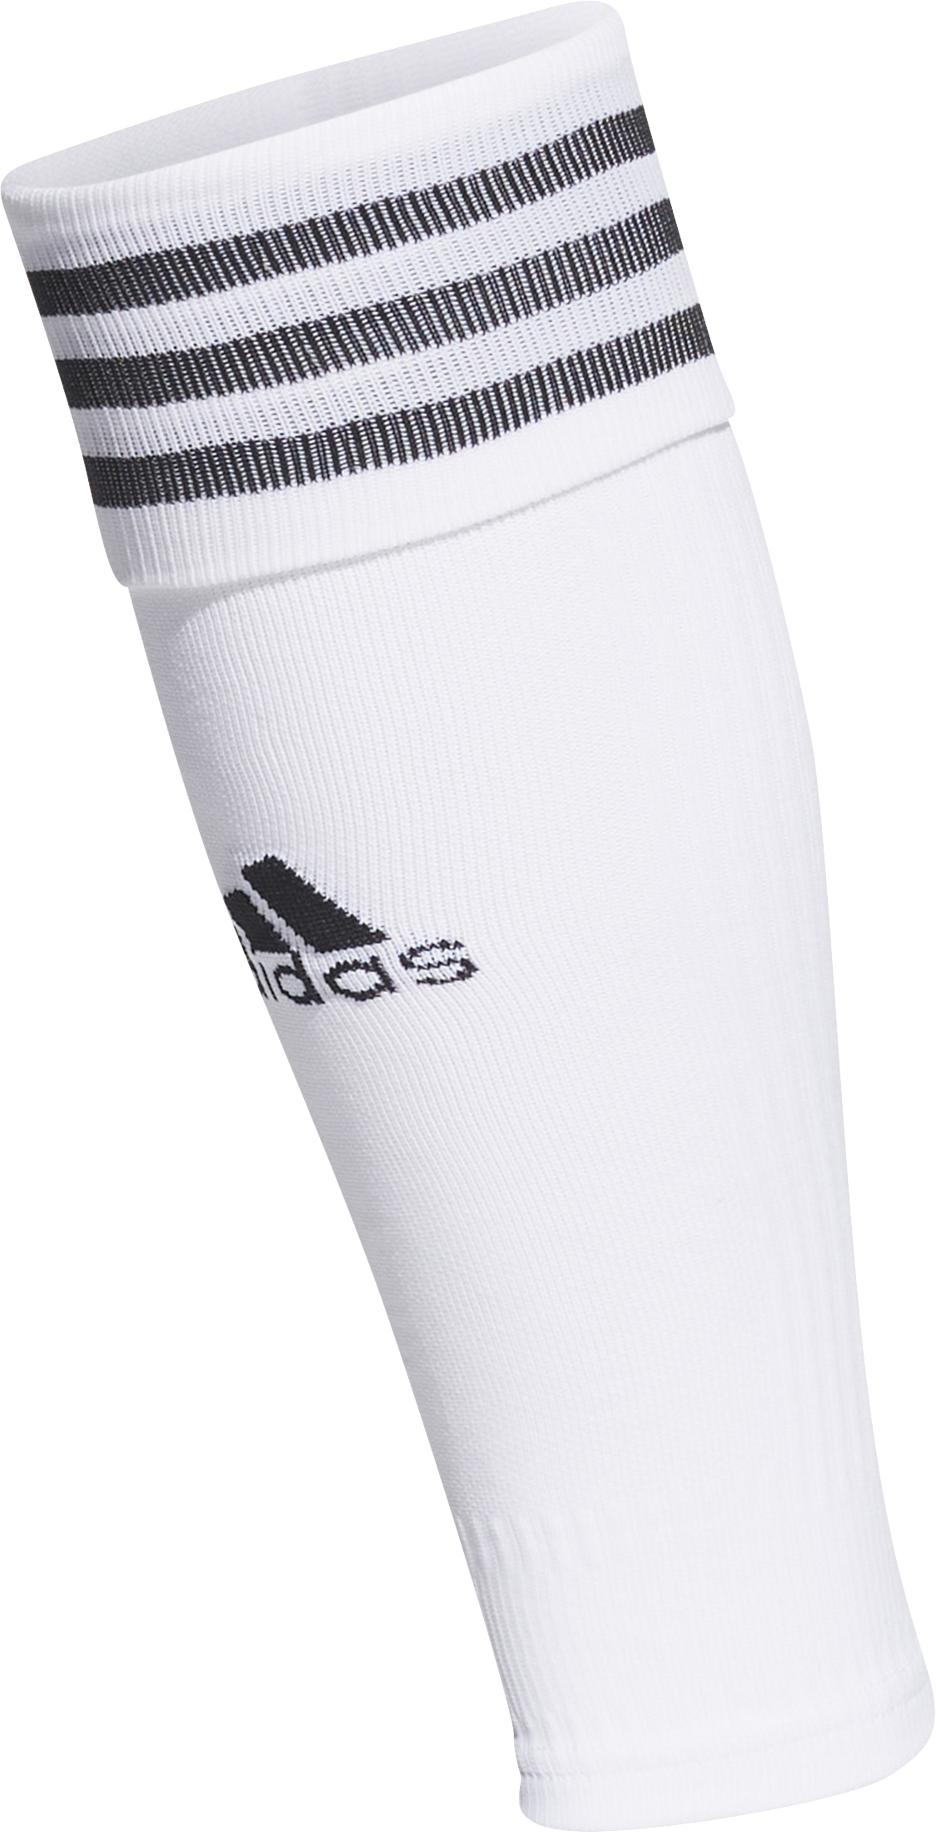 Футболни чорапи adidas TEAM SLEEVE 22